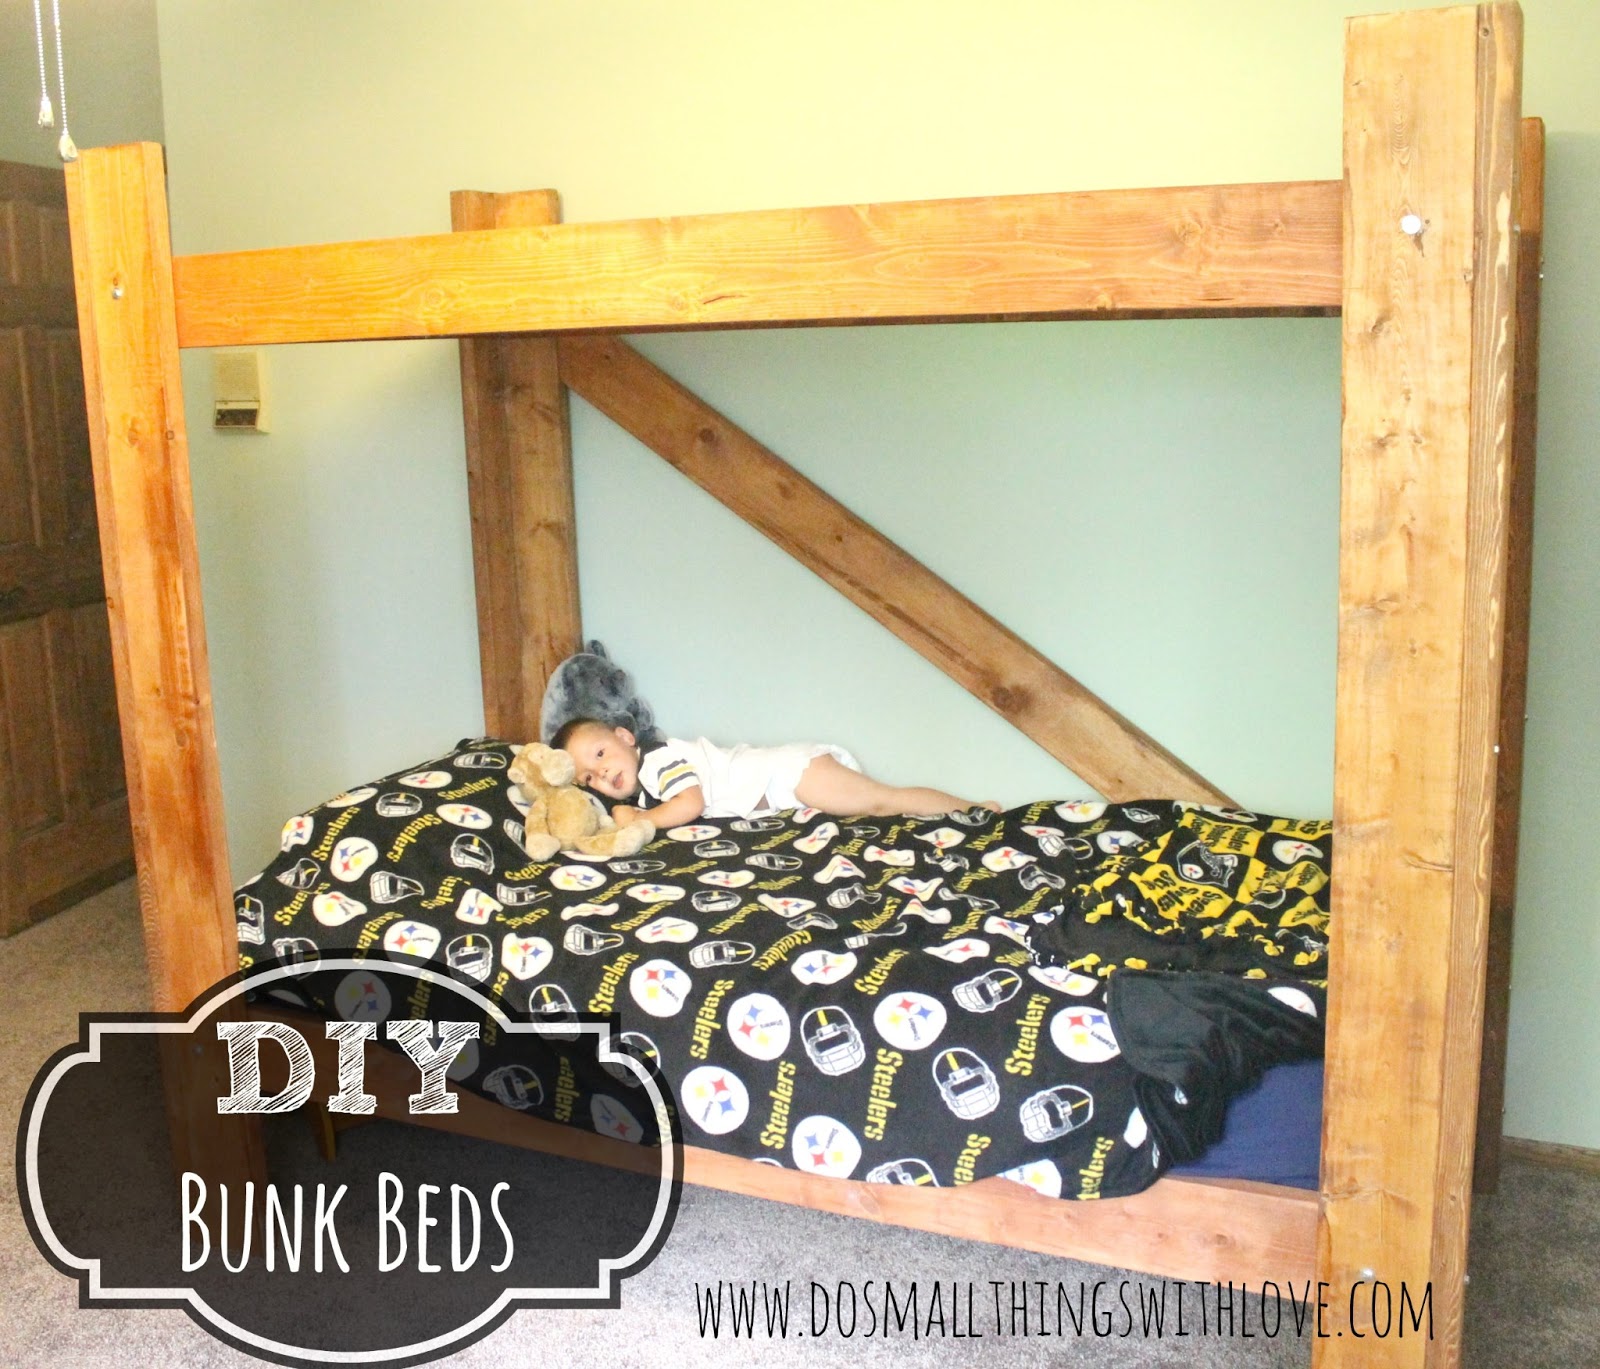 Building Bunk Beds Diy bunk beds